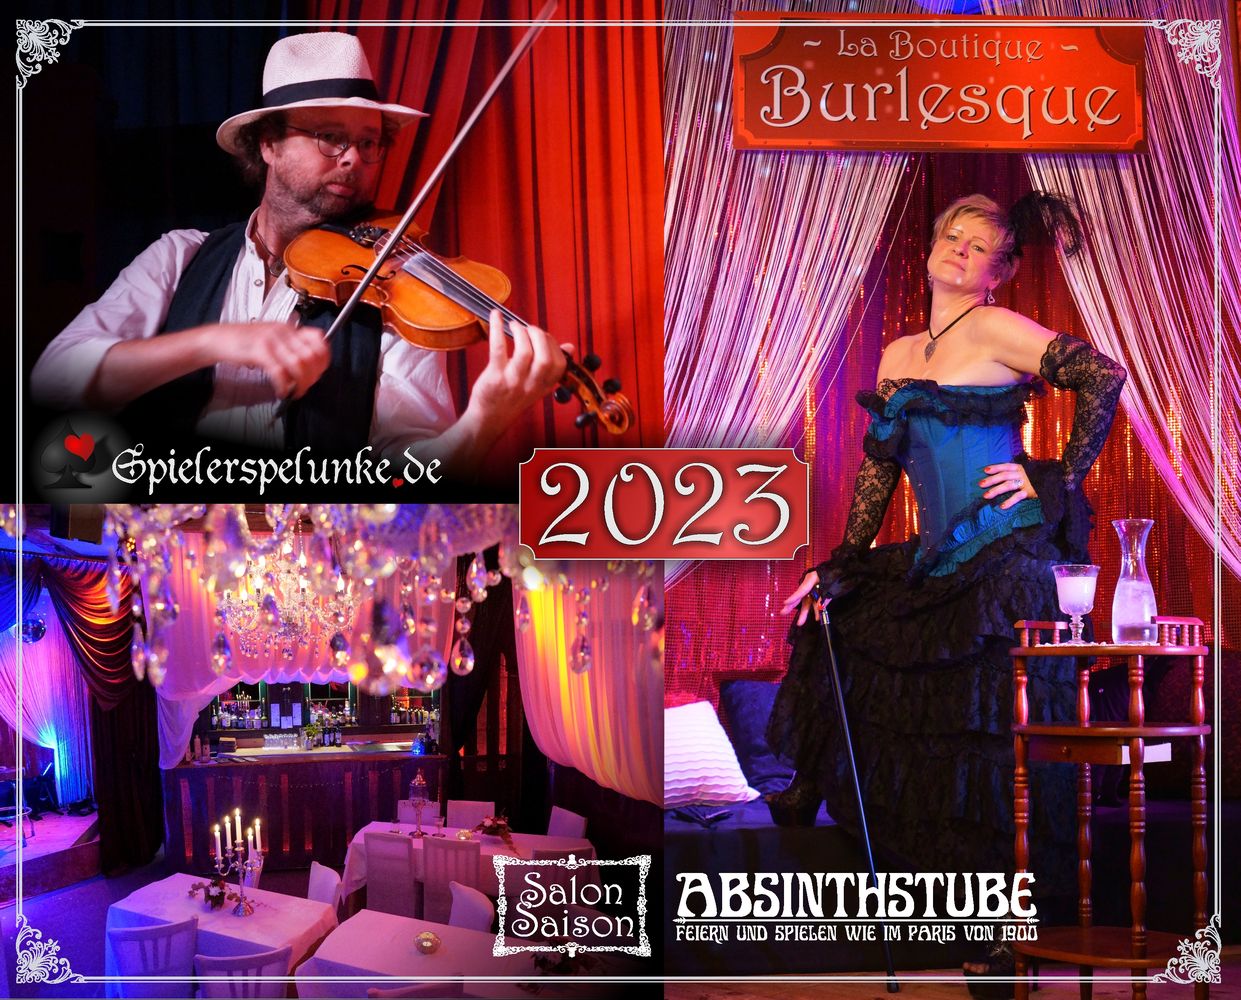 Konzerte Veranstaltungen Spielerspelunke Absinthstube Boutique Burlesque 2022